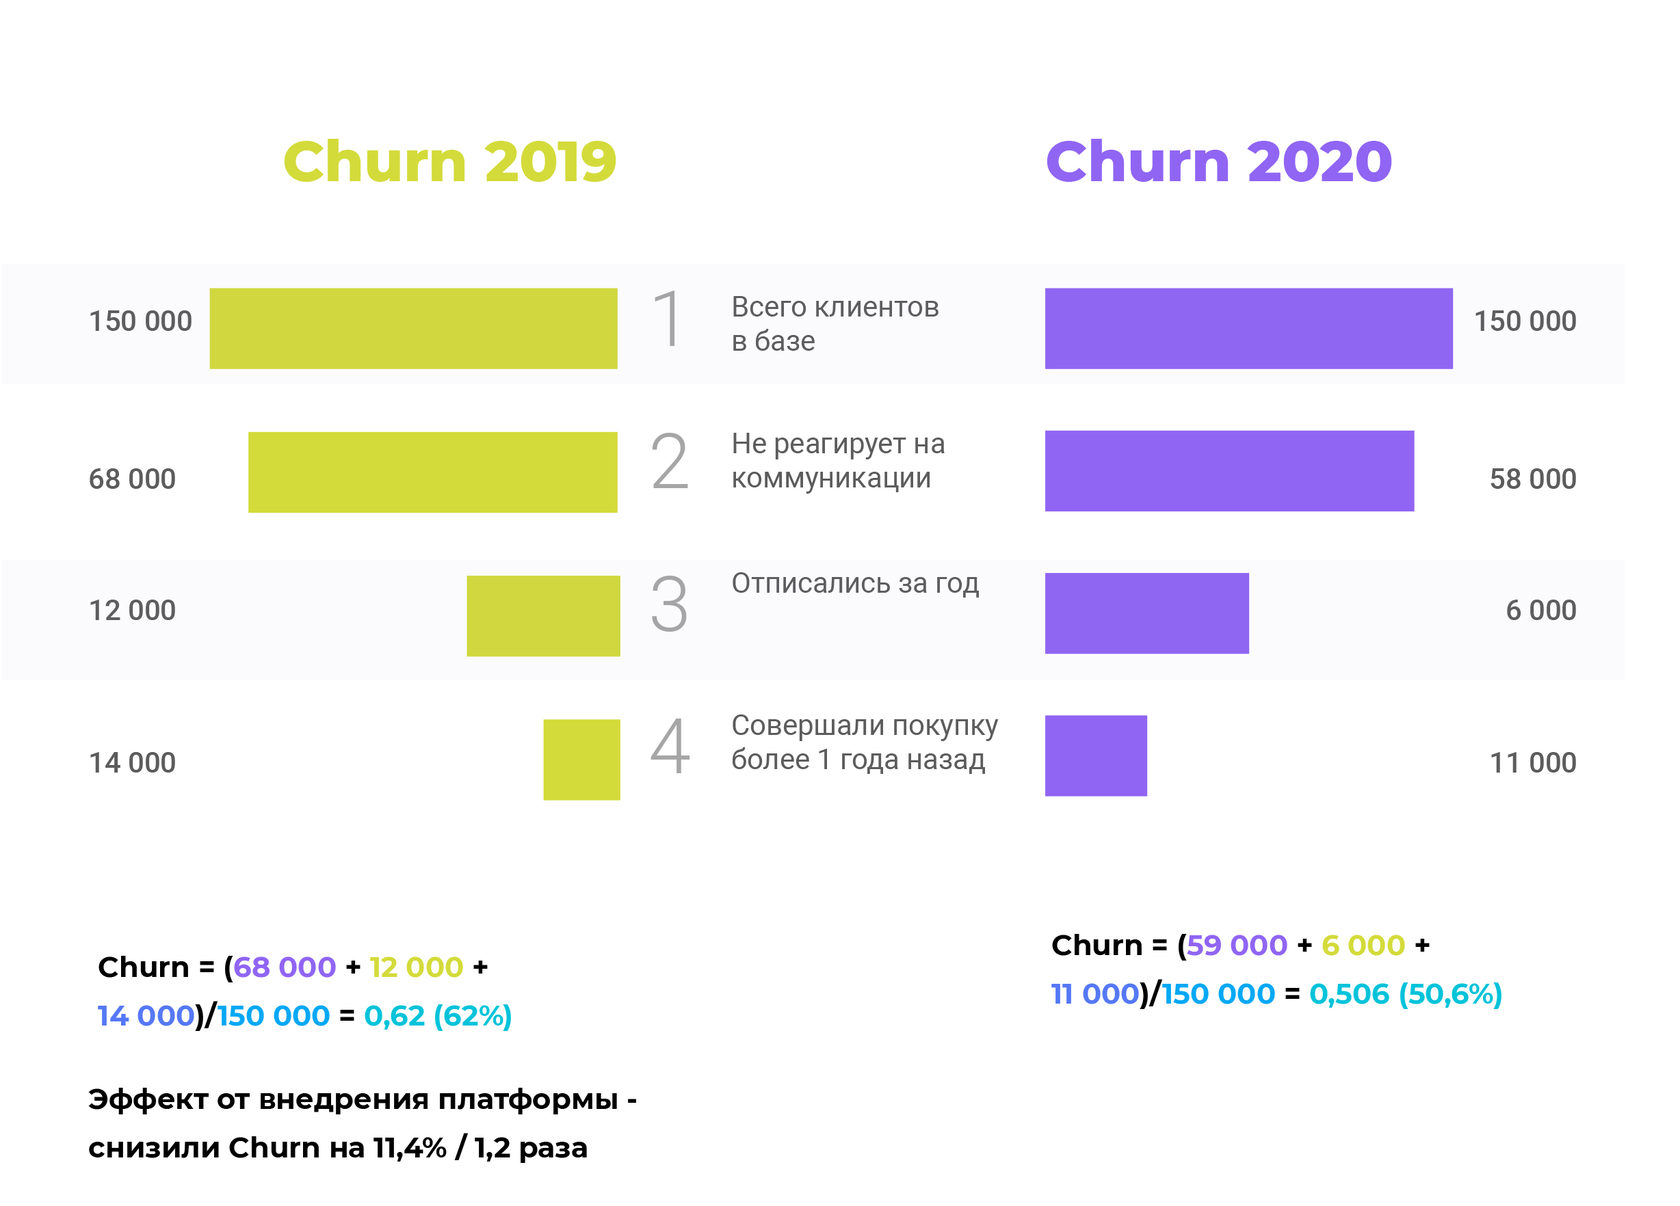 Churn = (клиенты, которые не реагируют на коммуникации + клиенты, которые отписались + клиенты, не совершавшие покупки более 1 года) / Общую базу клиентов